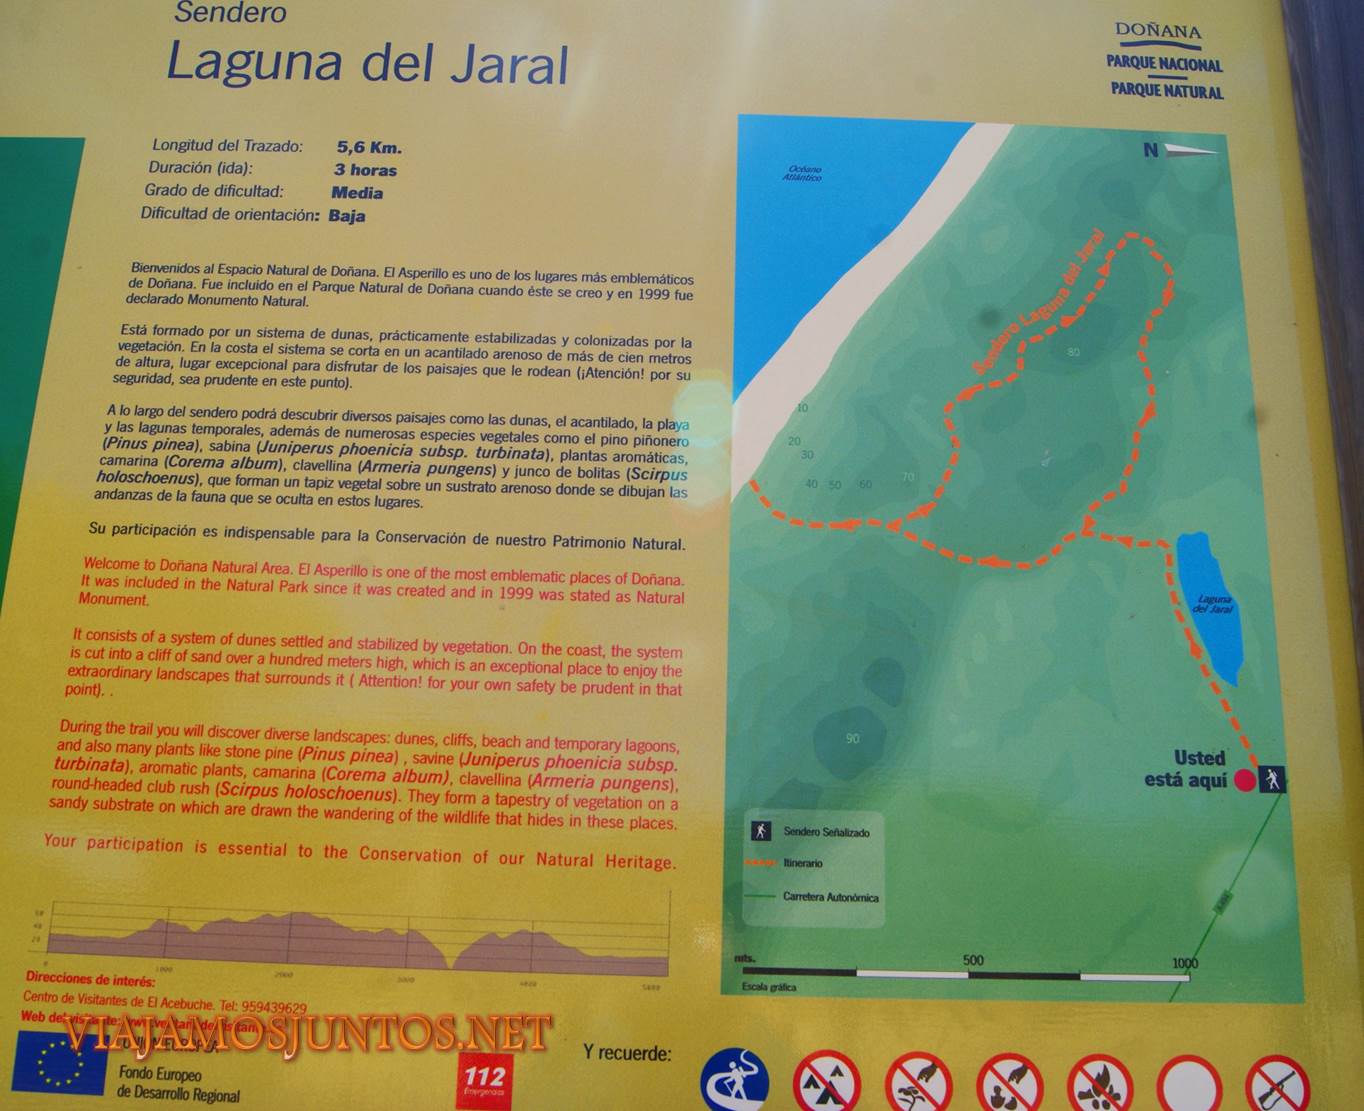 Doñana, asperillo, laguna Jaral, parque natural, parque nacional, parque dunar, dunas, dunas fijas, huelva, andalucia, acantilado, senderismo, rutas